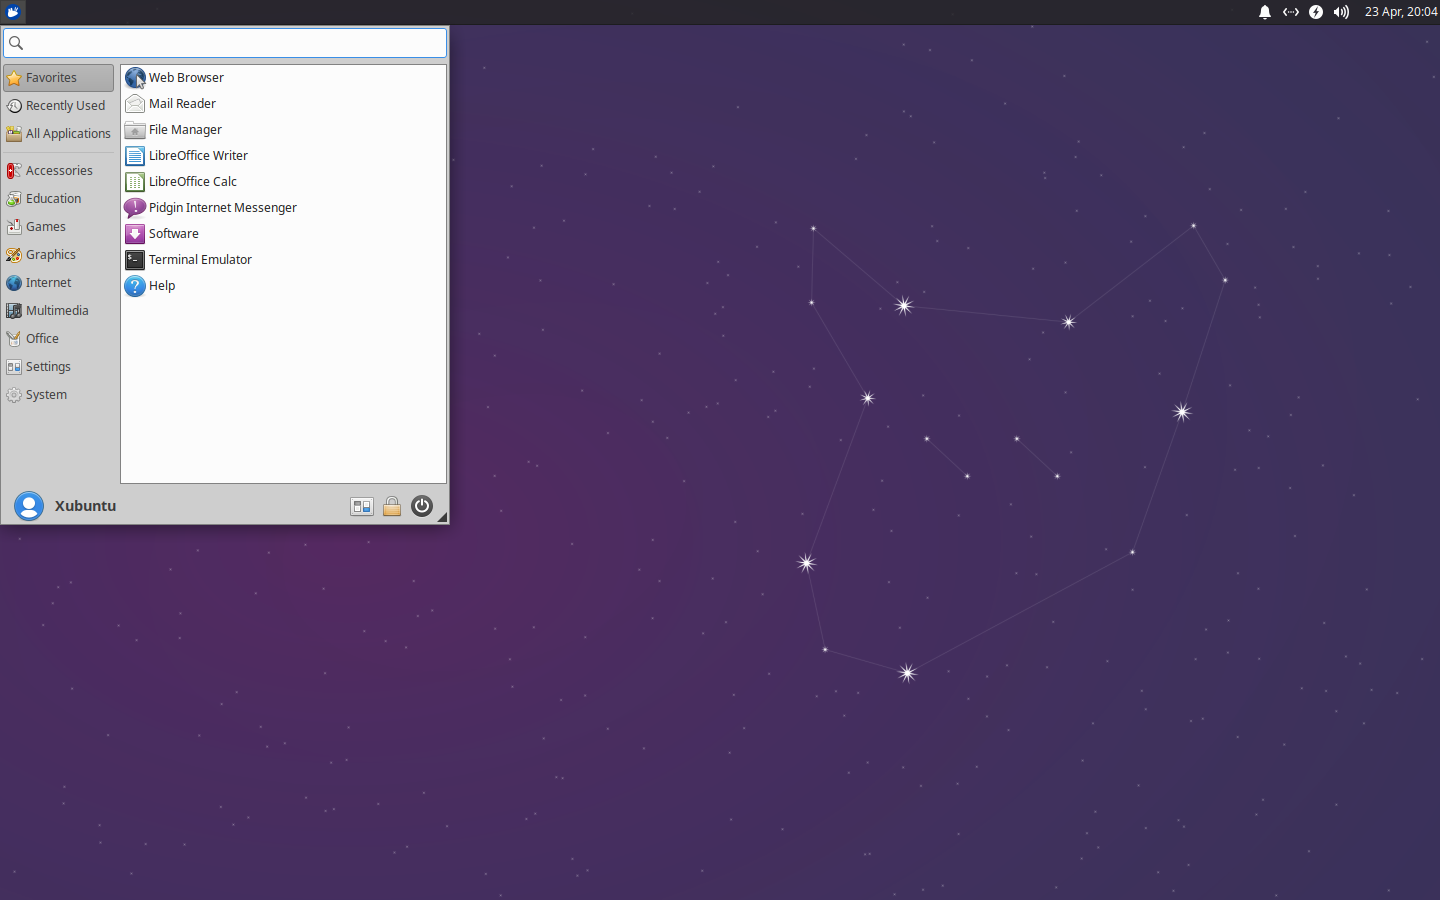 Xubuntu 20.04 desktop